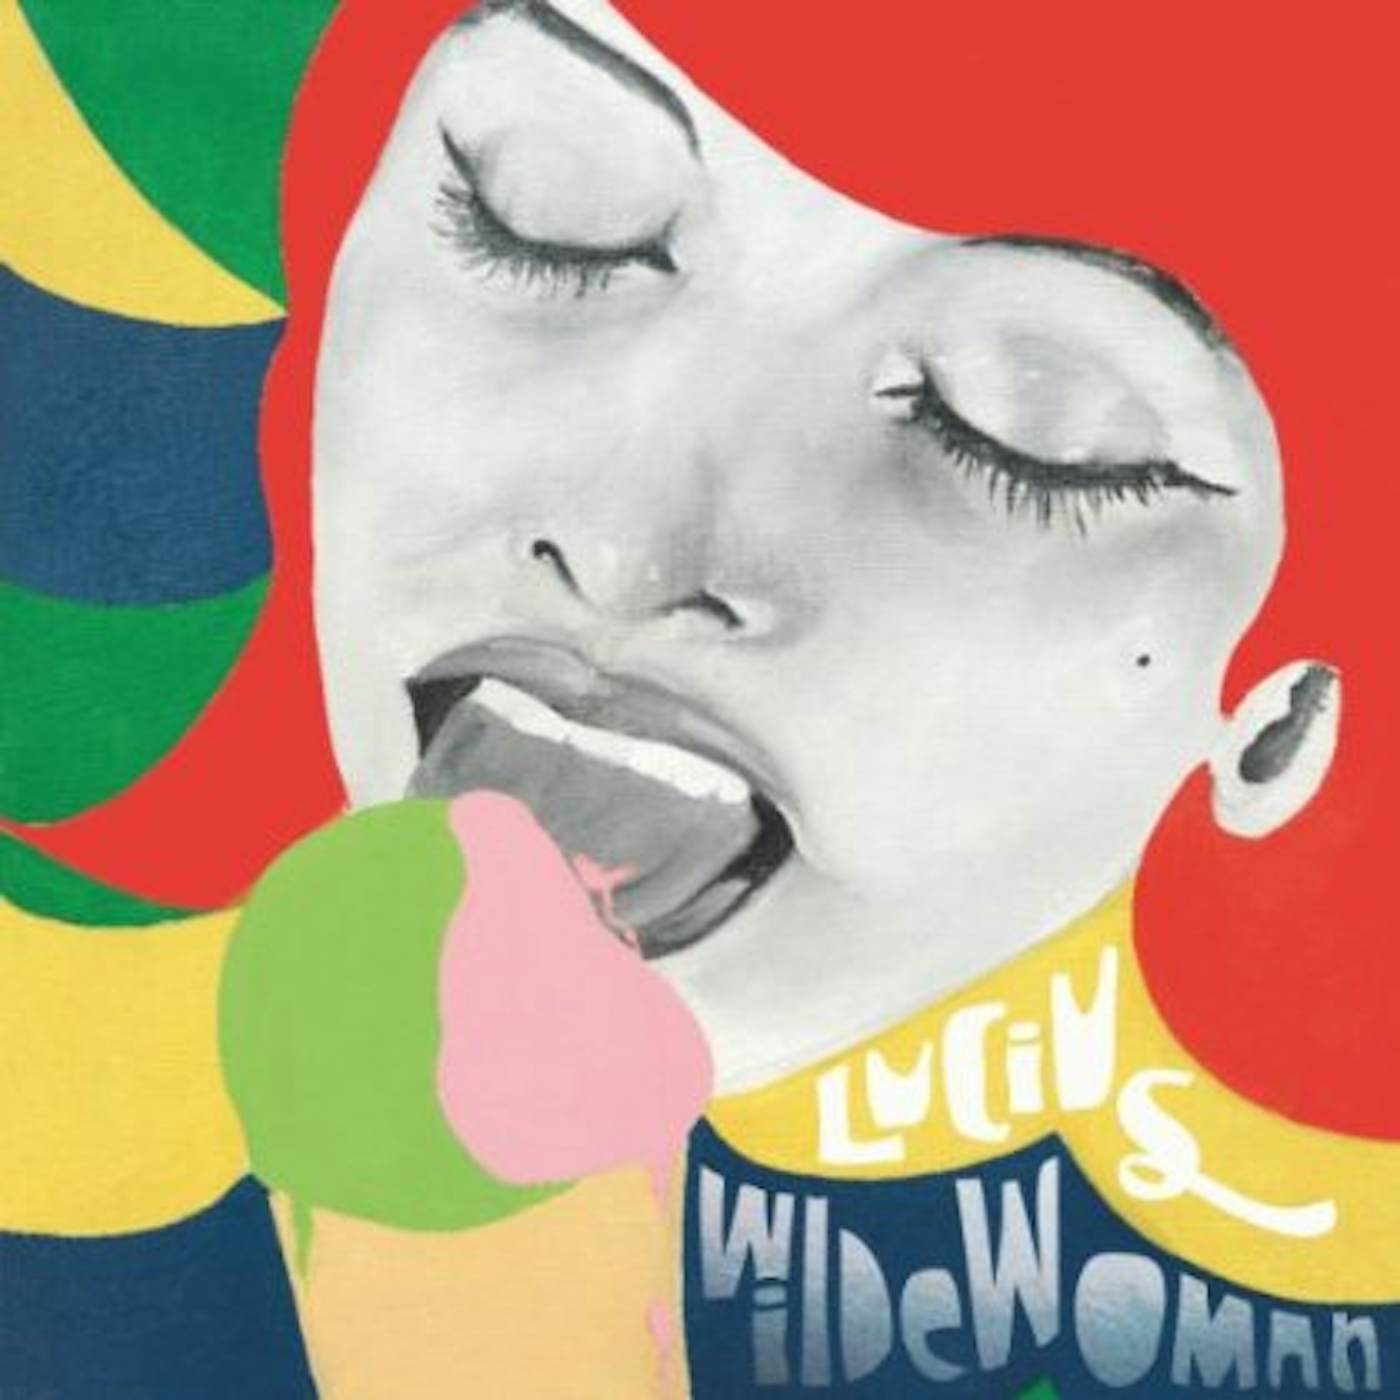 Lucius Wildewoman Vinyl Record